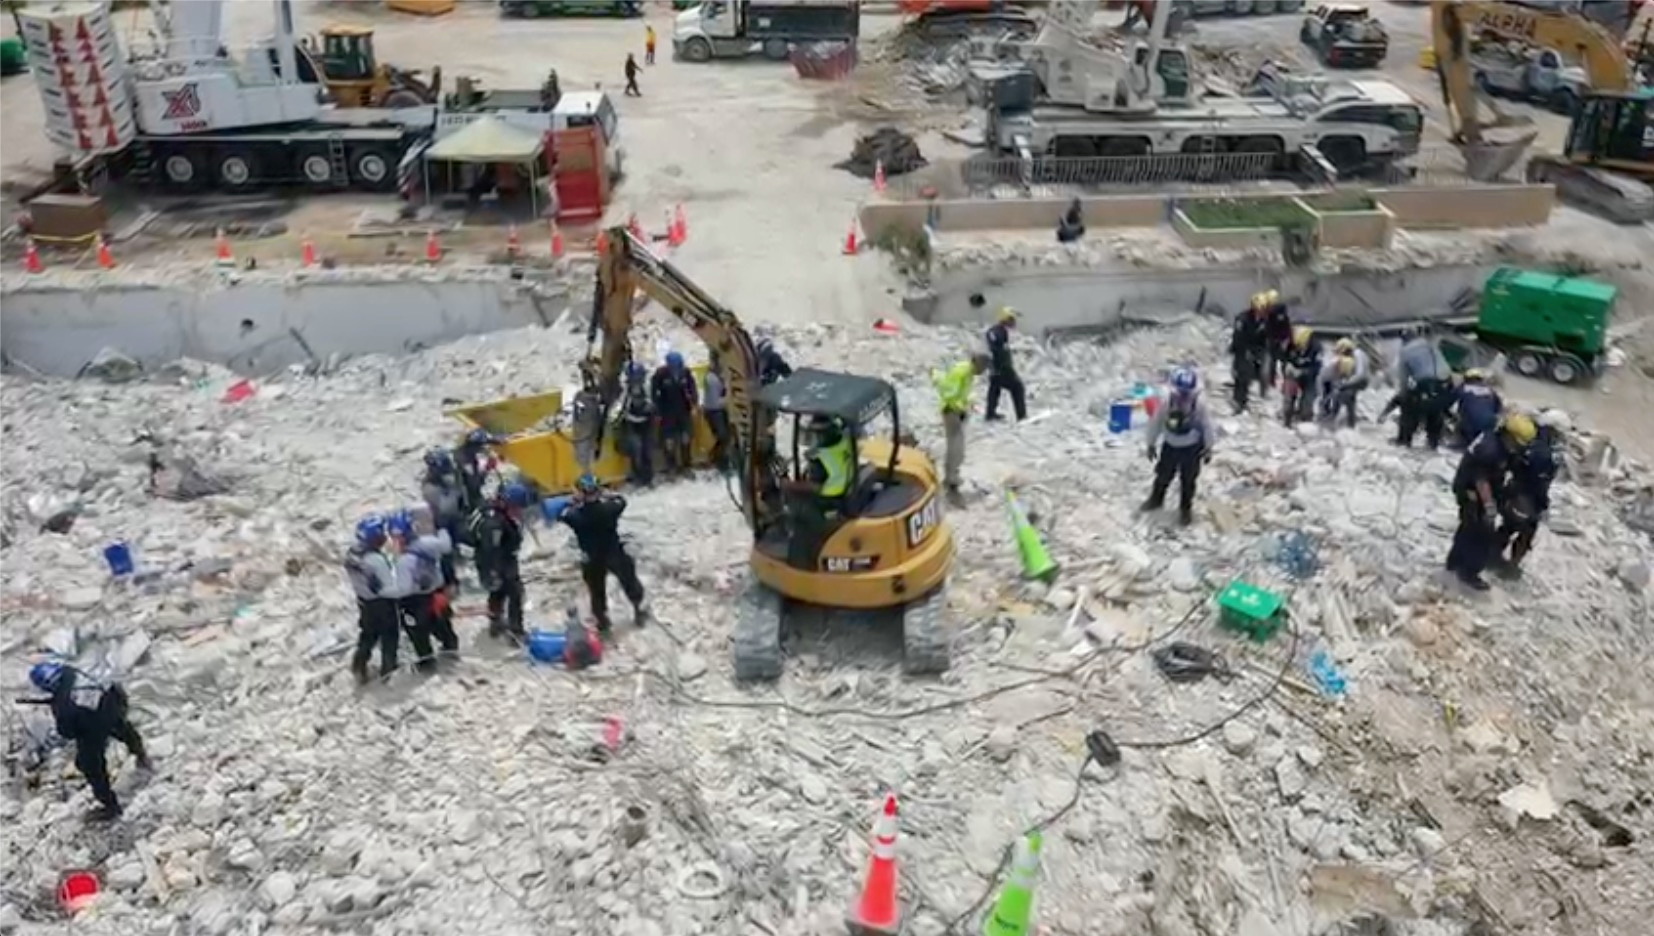 Los rescatistas ya han eliminado 2,5 millones de kilos de escombros. (Departamento de Bomberos de Miami Dade/ REUTERS)